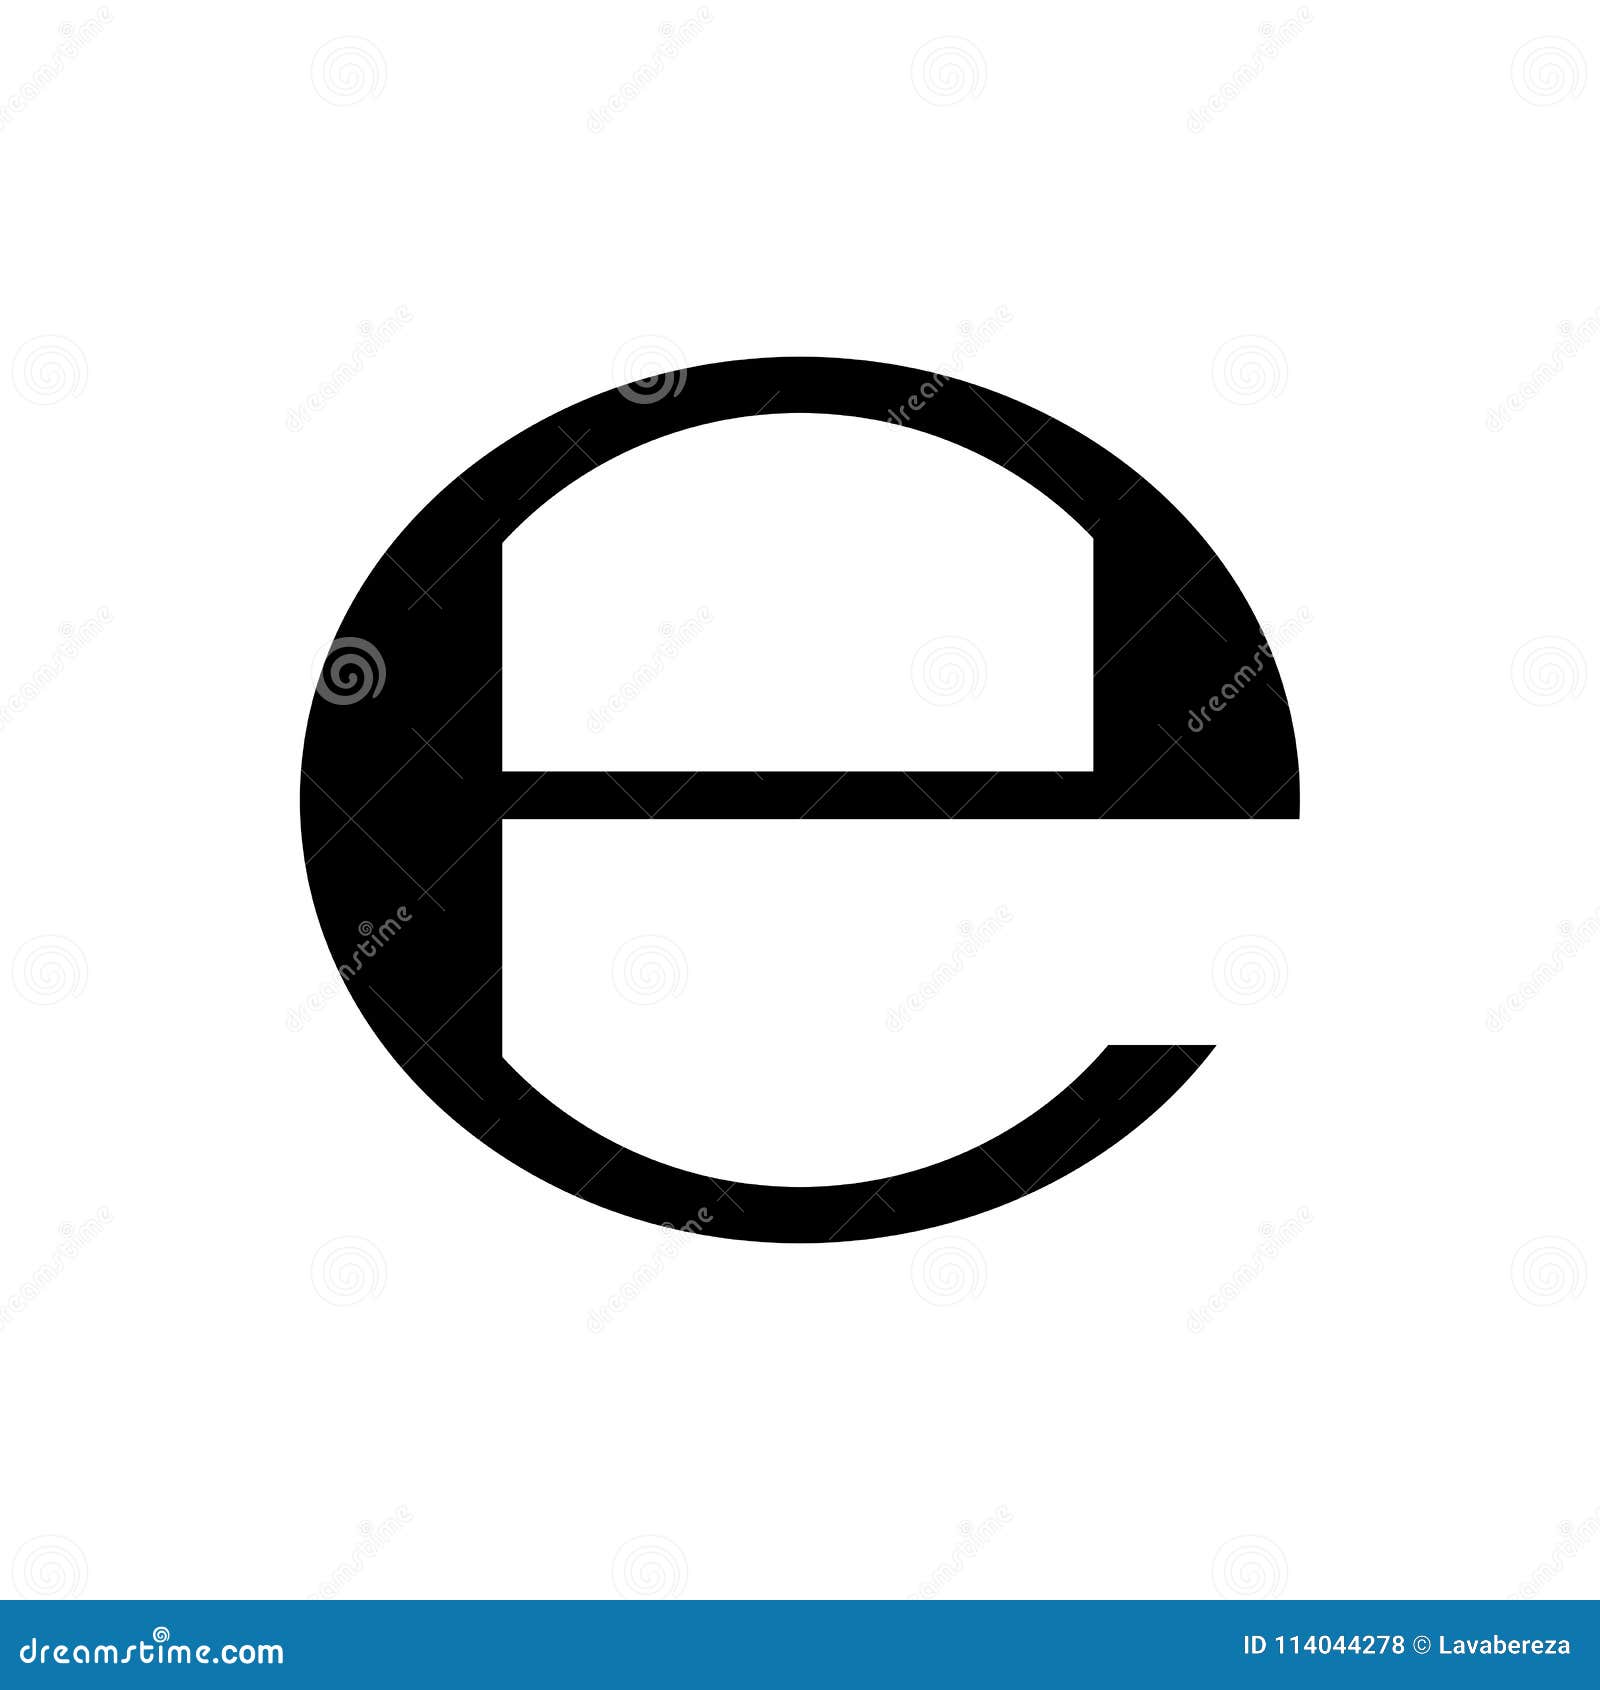 E at sign symbol vector